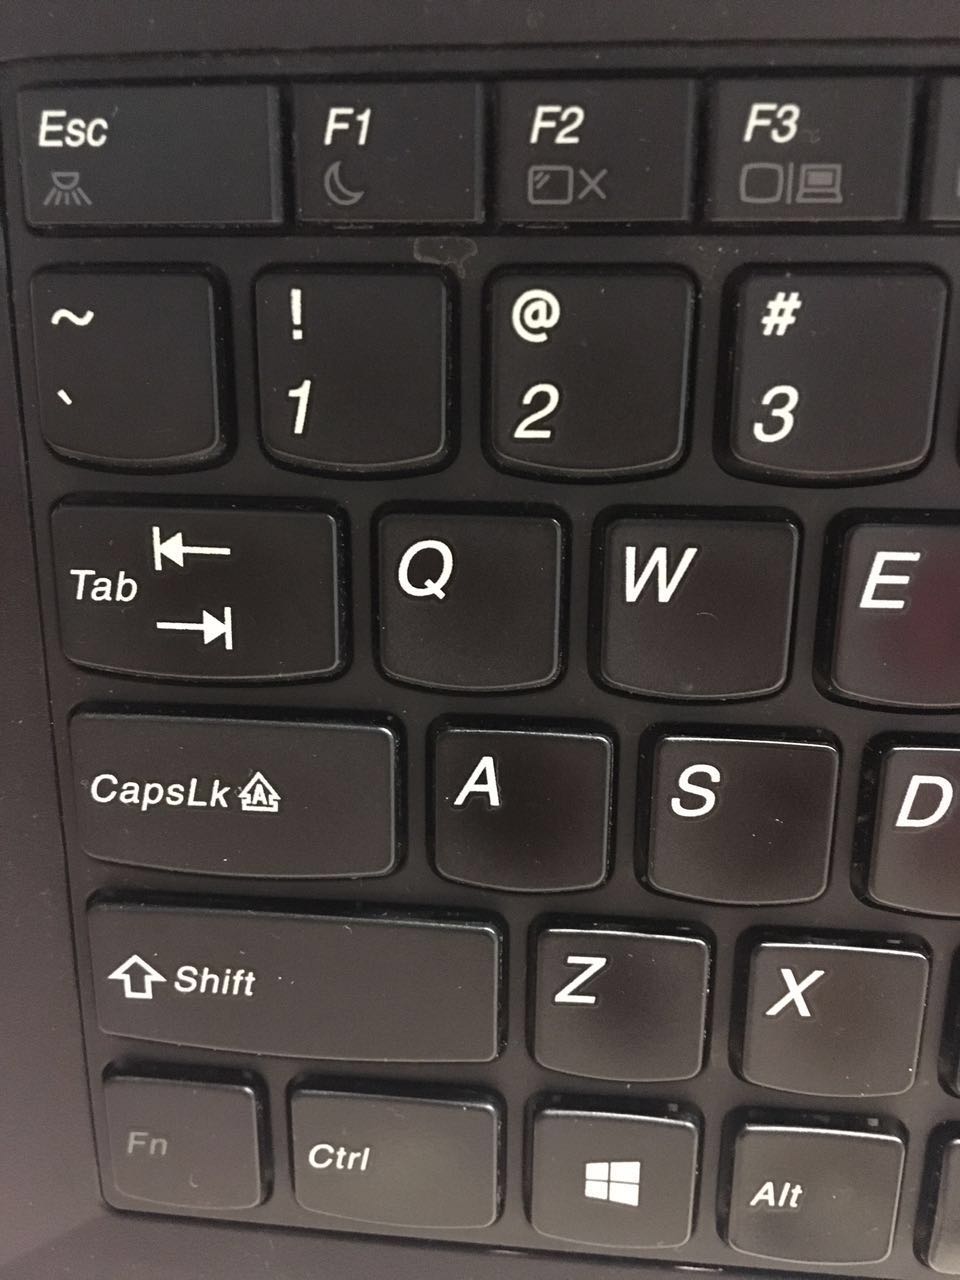 Как сделать подсветку на клавиатуре своими руками